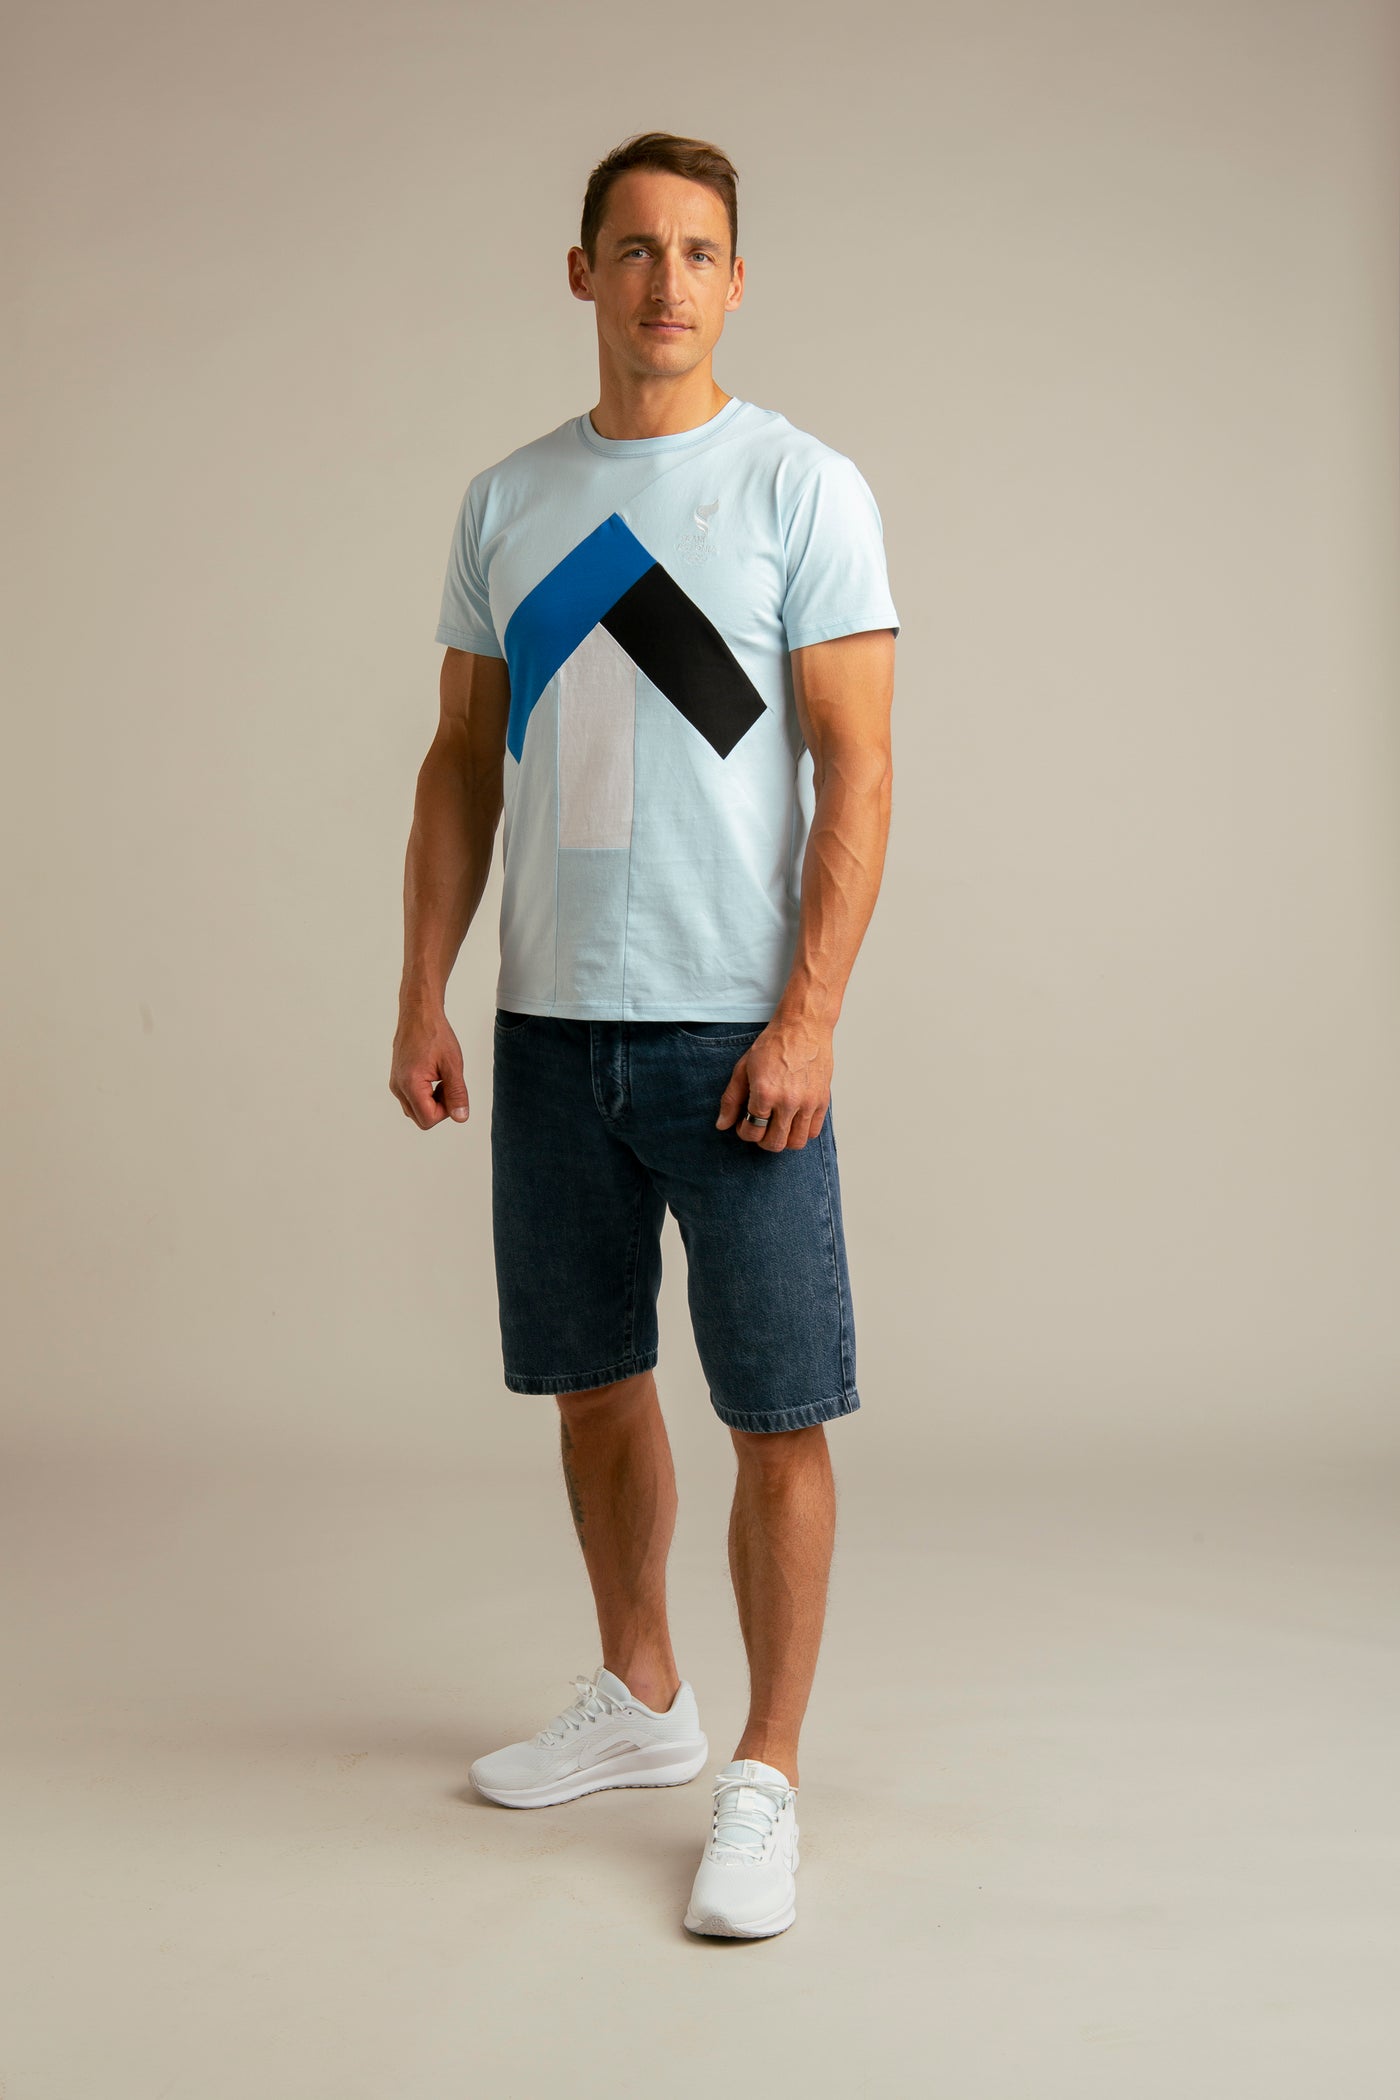 Up-shirt for men | Blue, Team Estonia